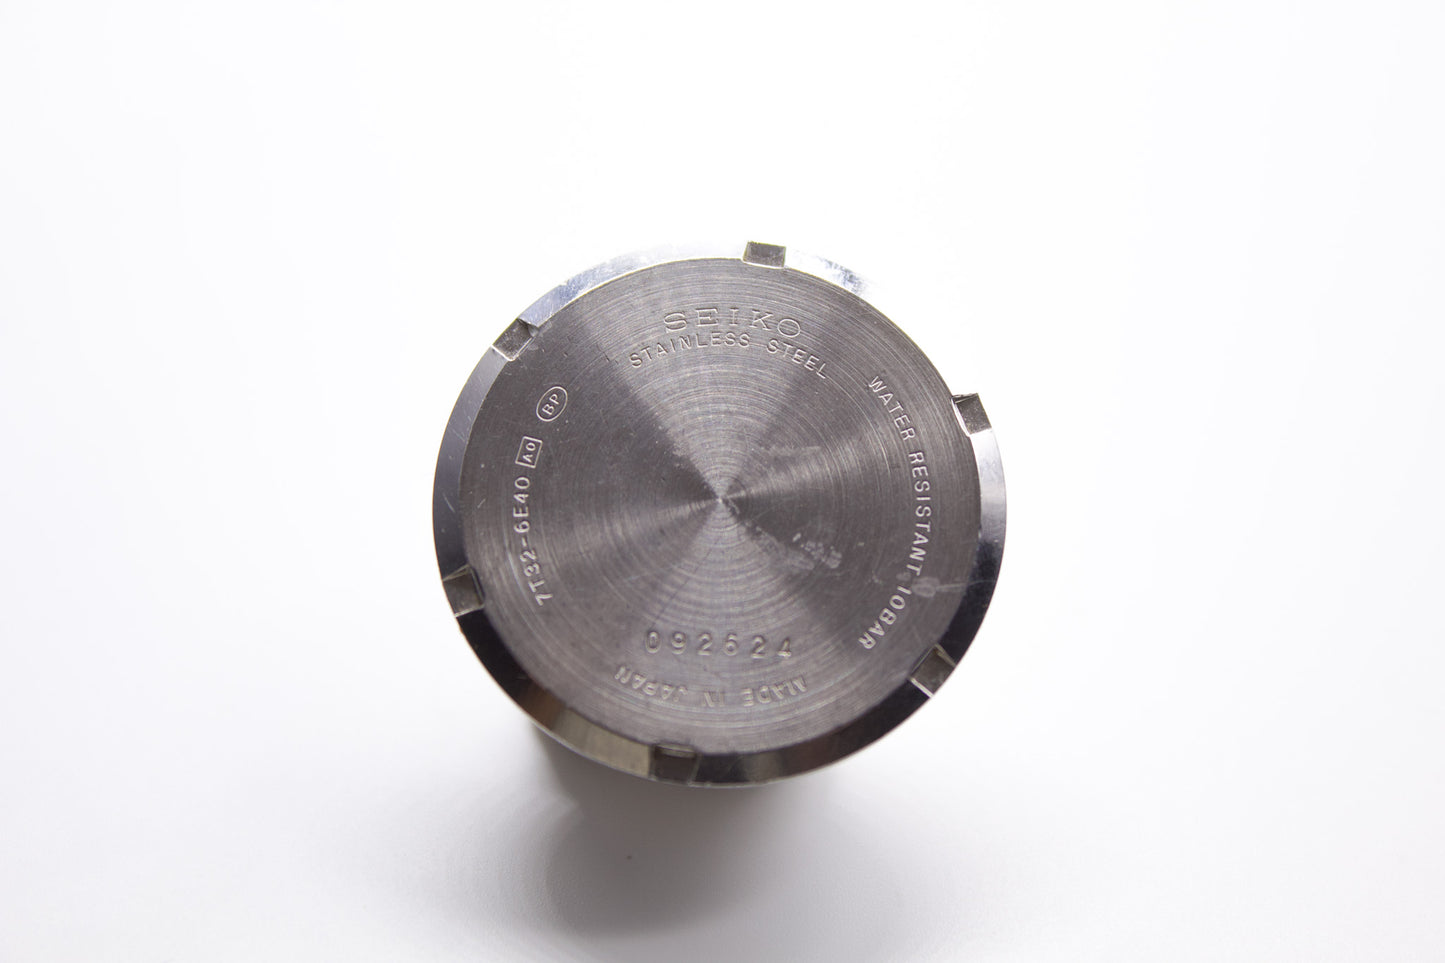 1998 Seiko Chronograph Black Matte Dial Men's Wrist-Watch